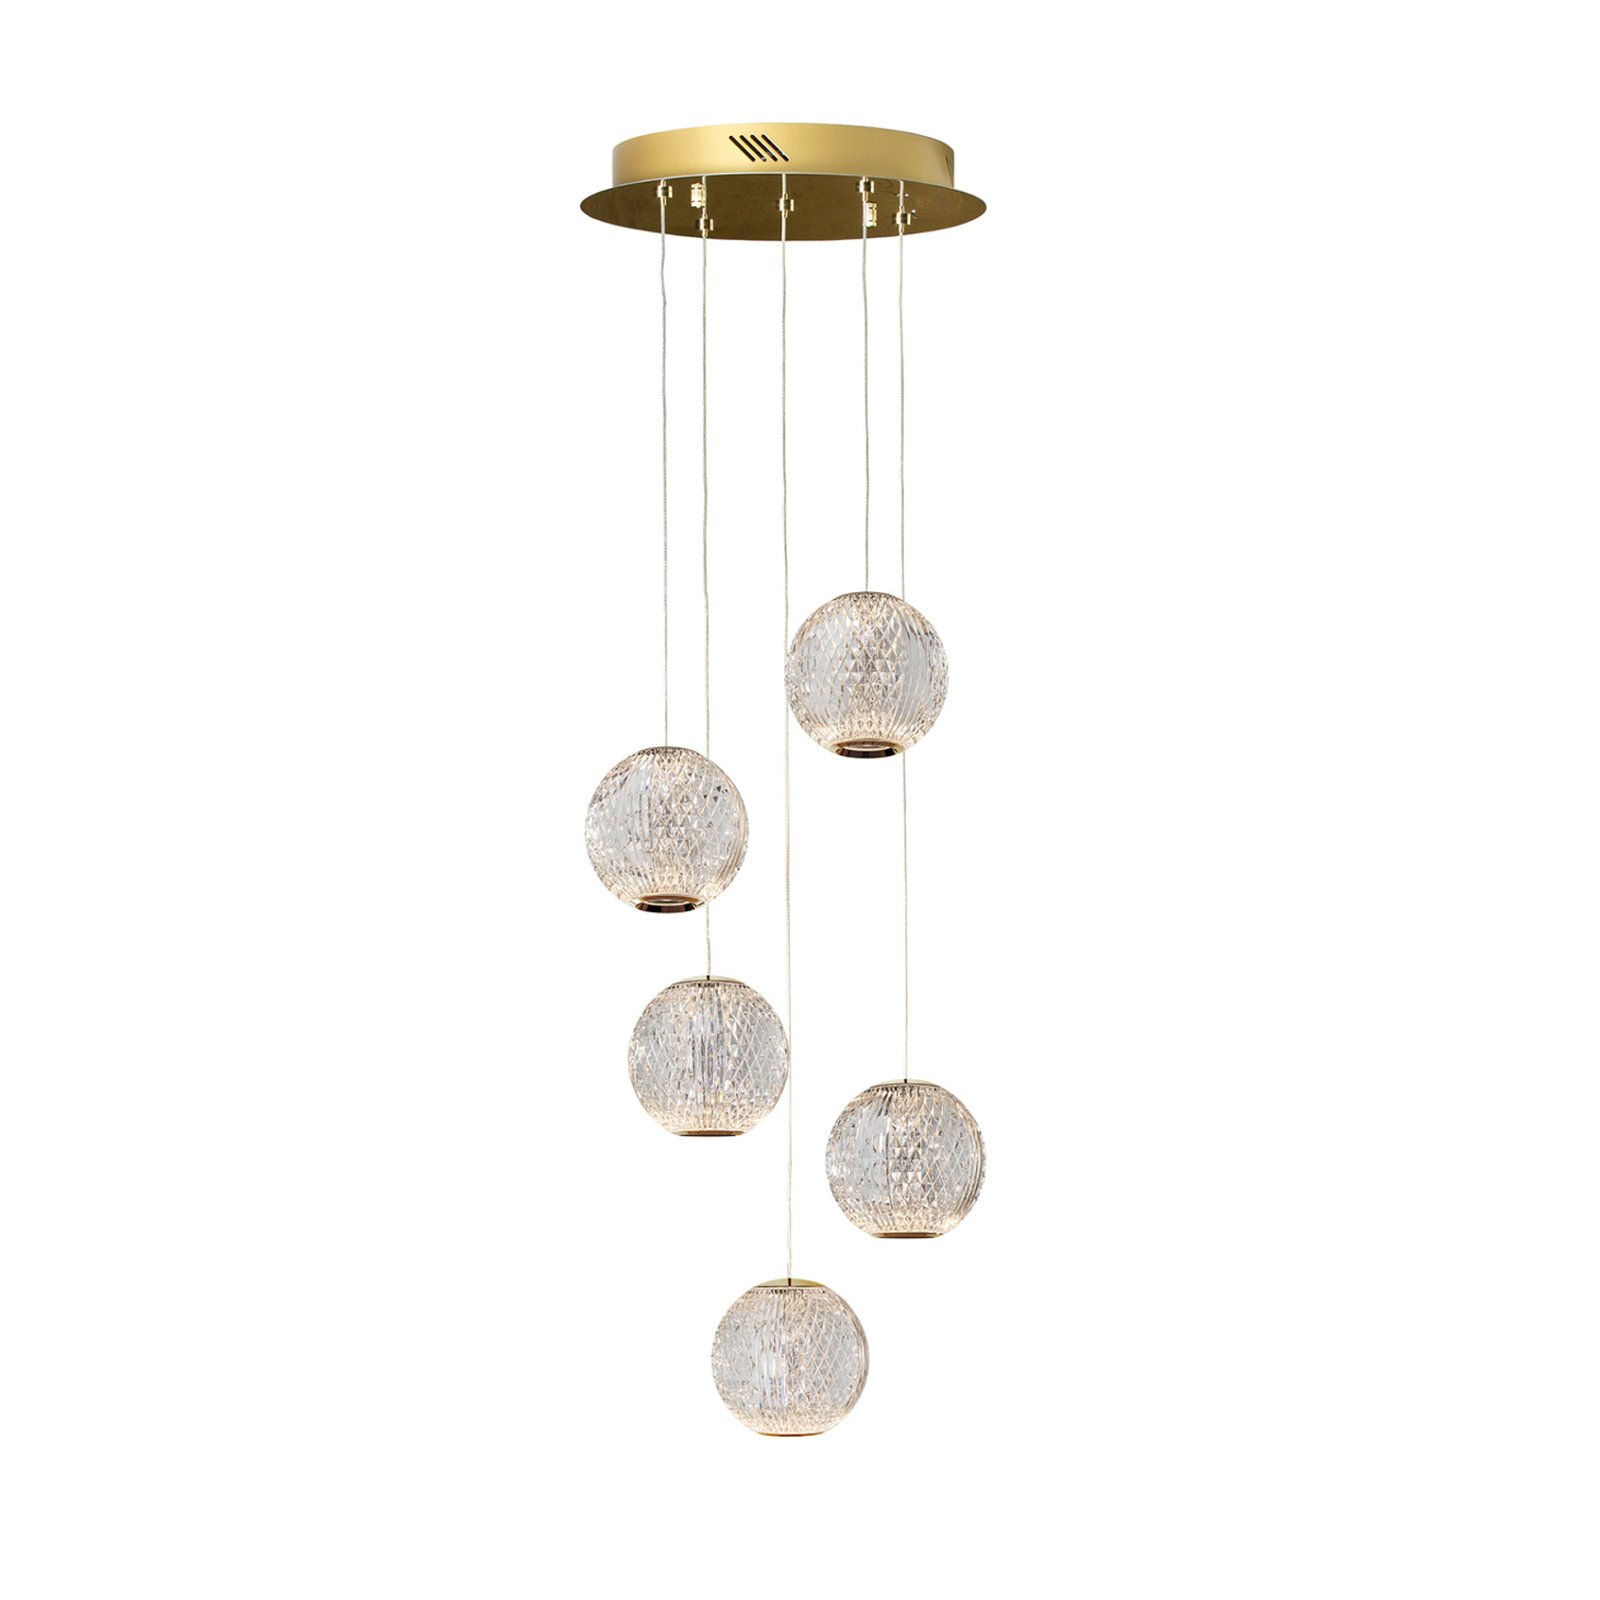 LED hanglamp Austral goud/helder 5-lamps rond